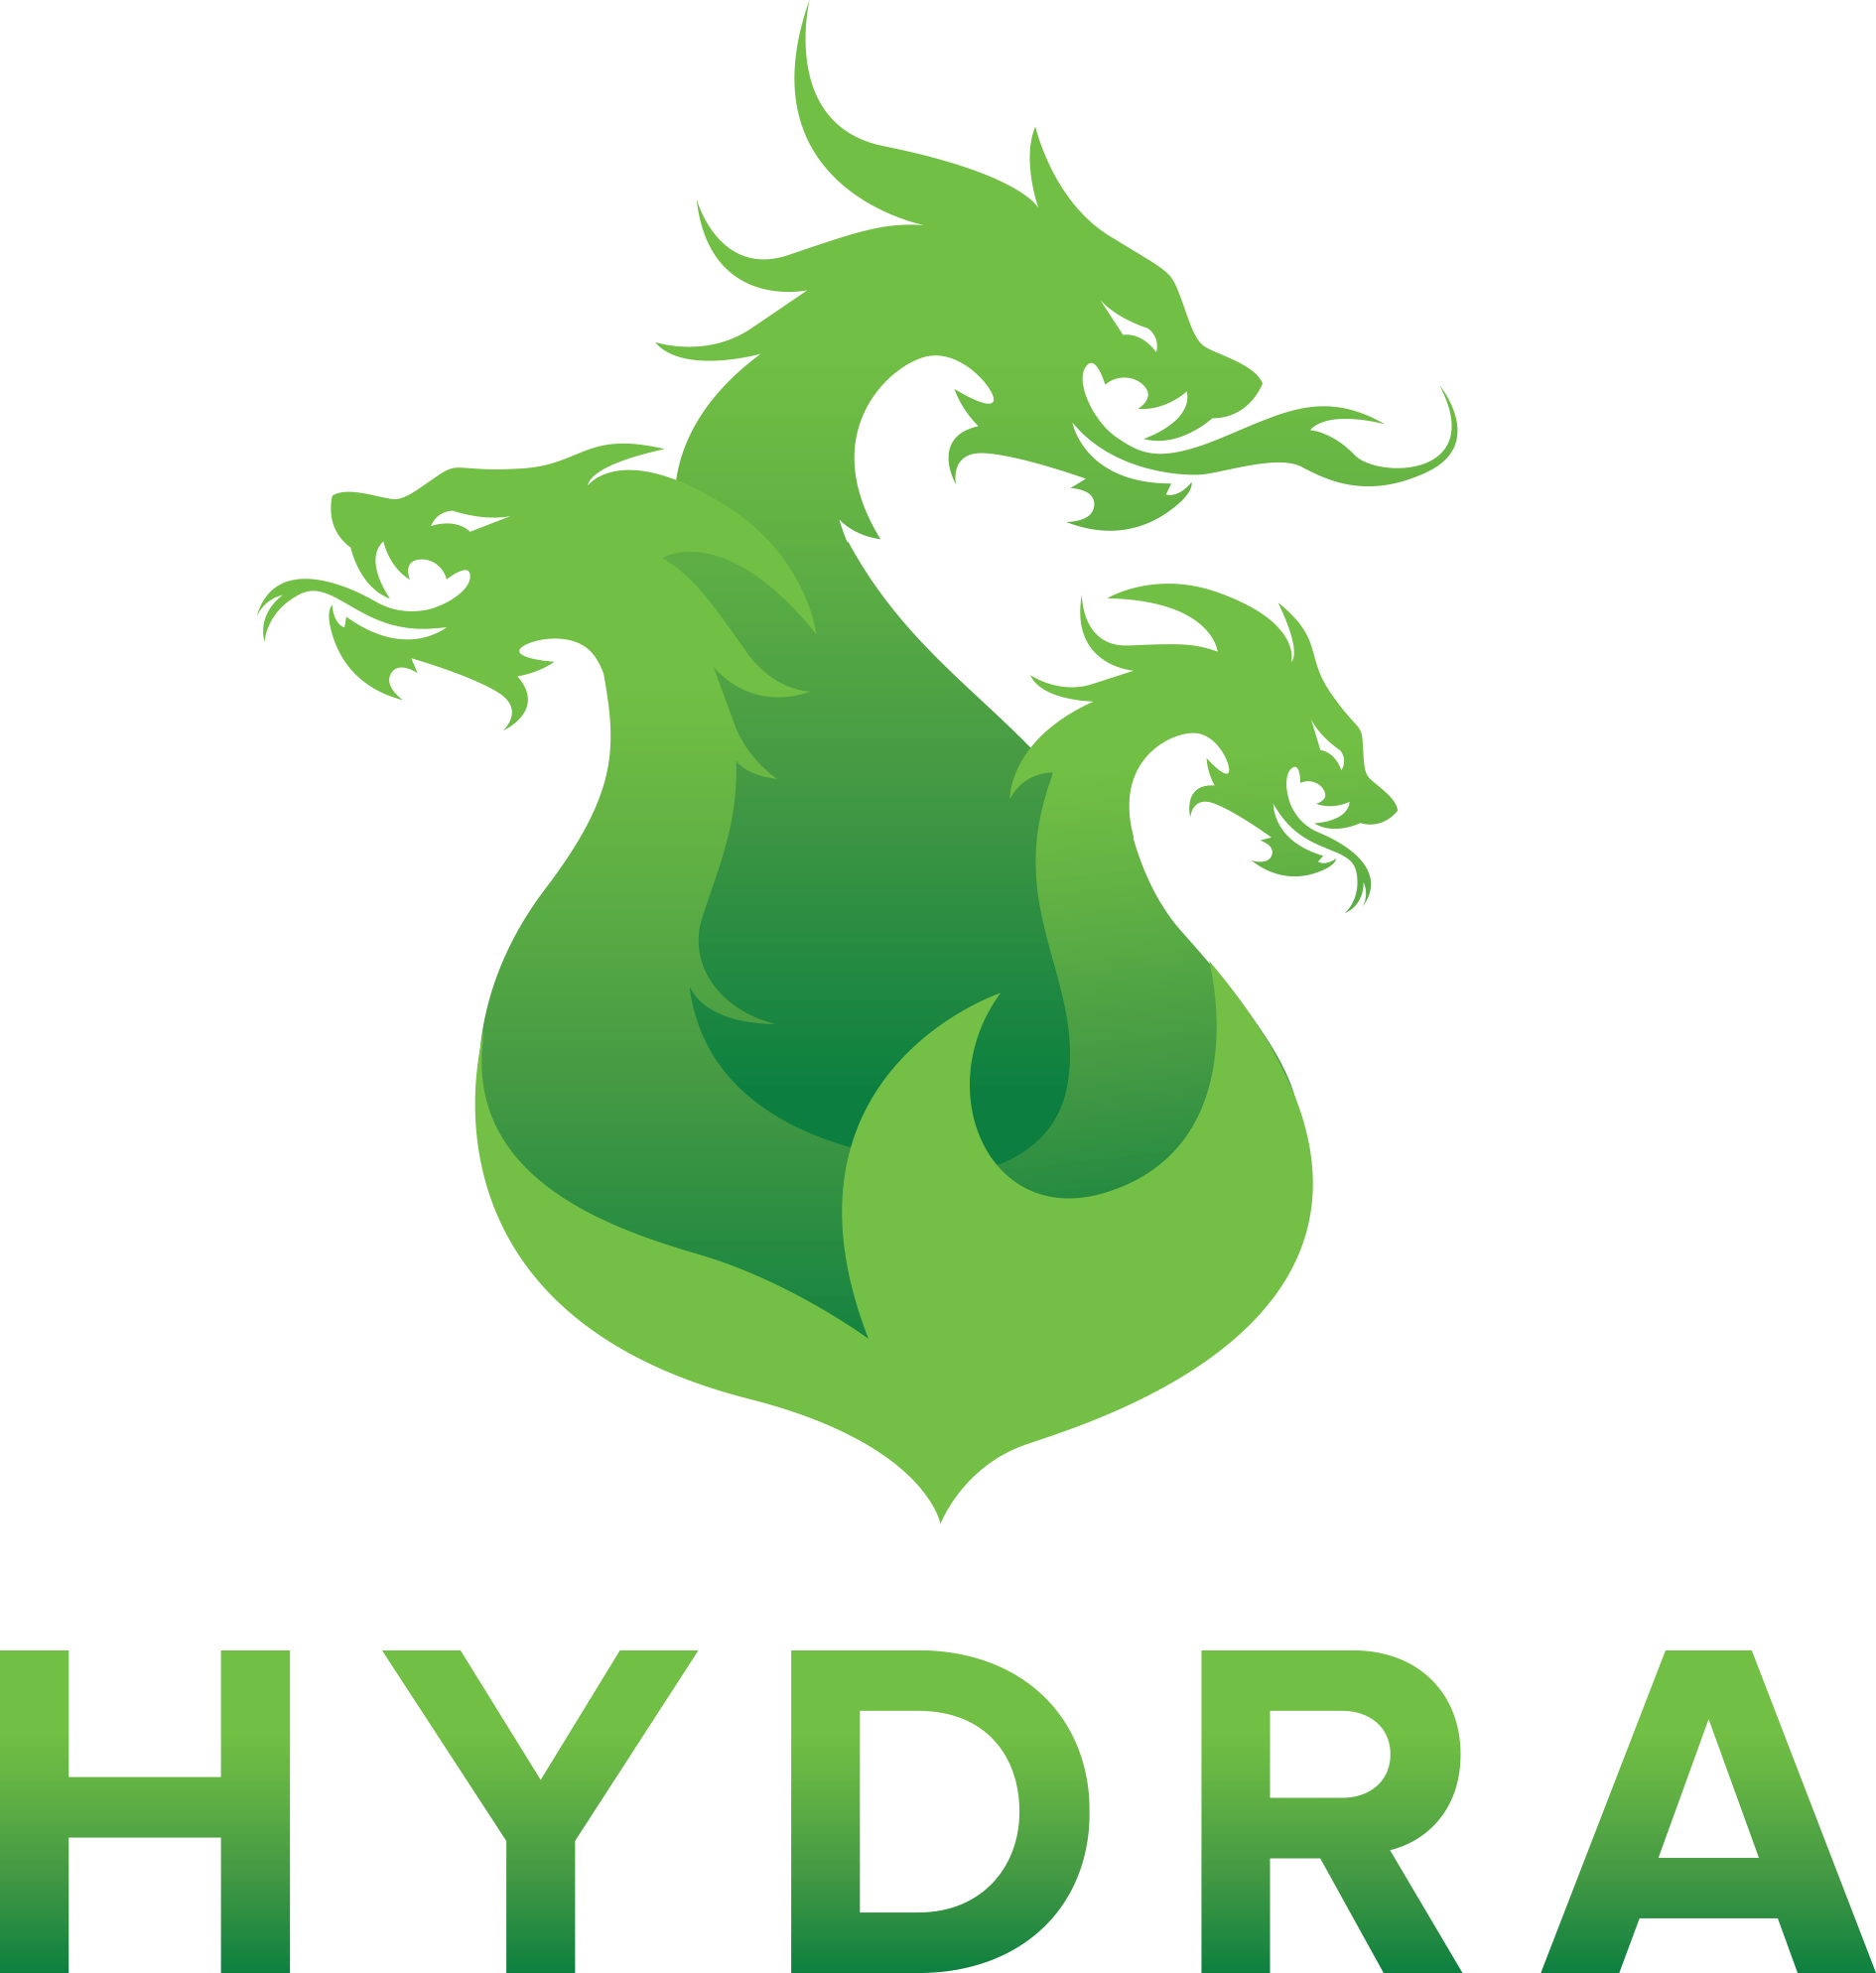 Hydra onion wiki hydra семена конопли сканка